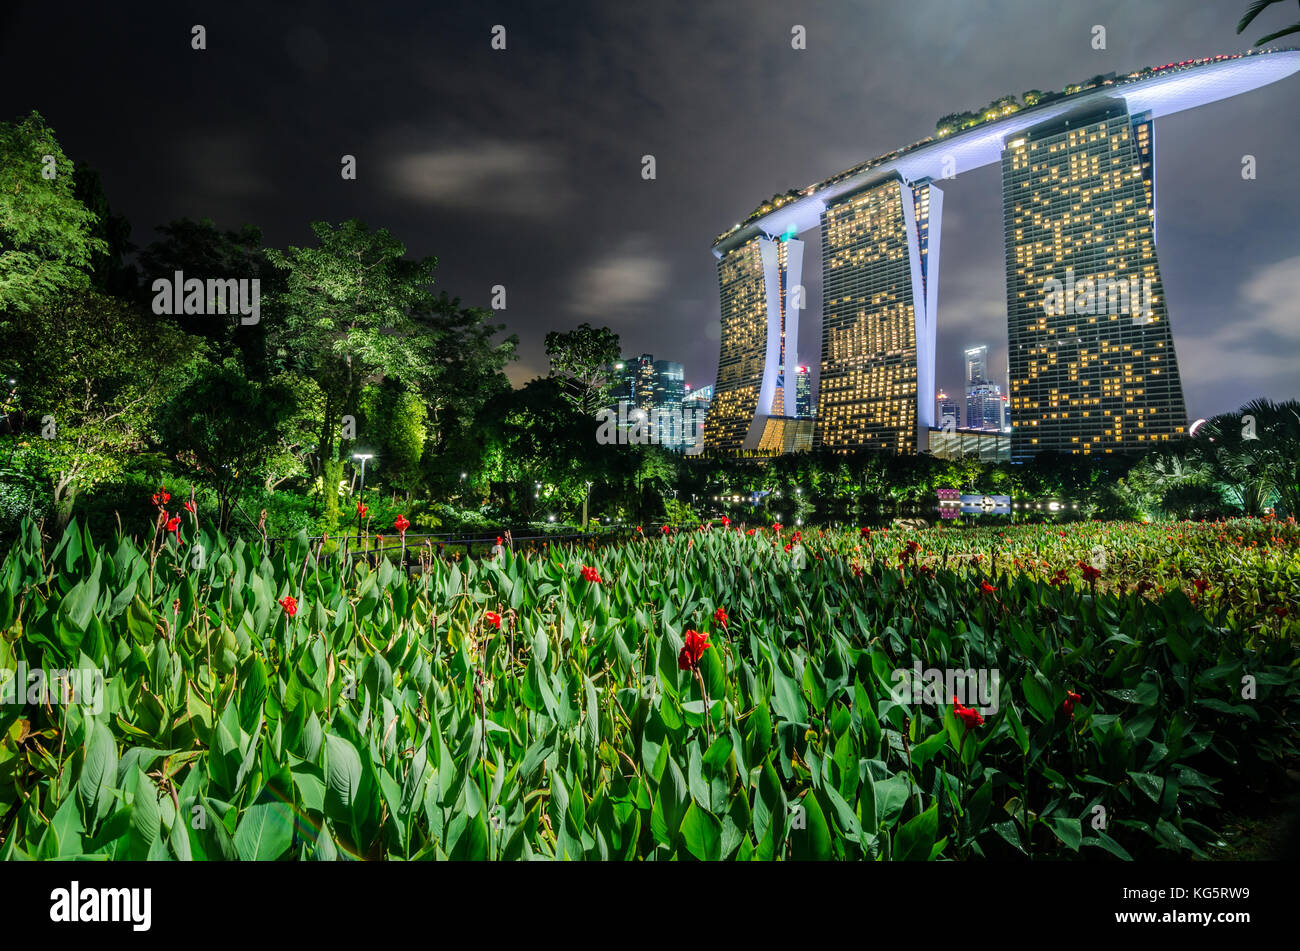 Belle nuit au jardin par la baie de Marina Bay Sands Hotel. Banque D'Images